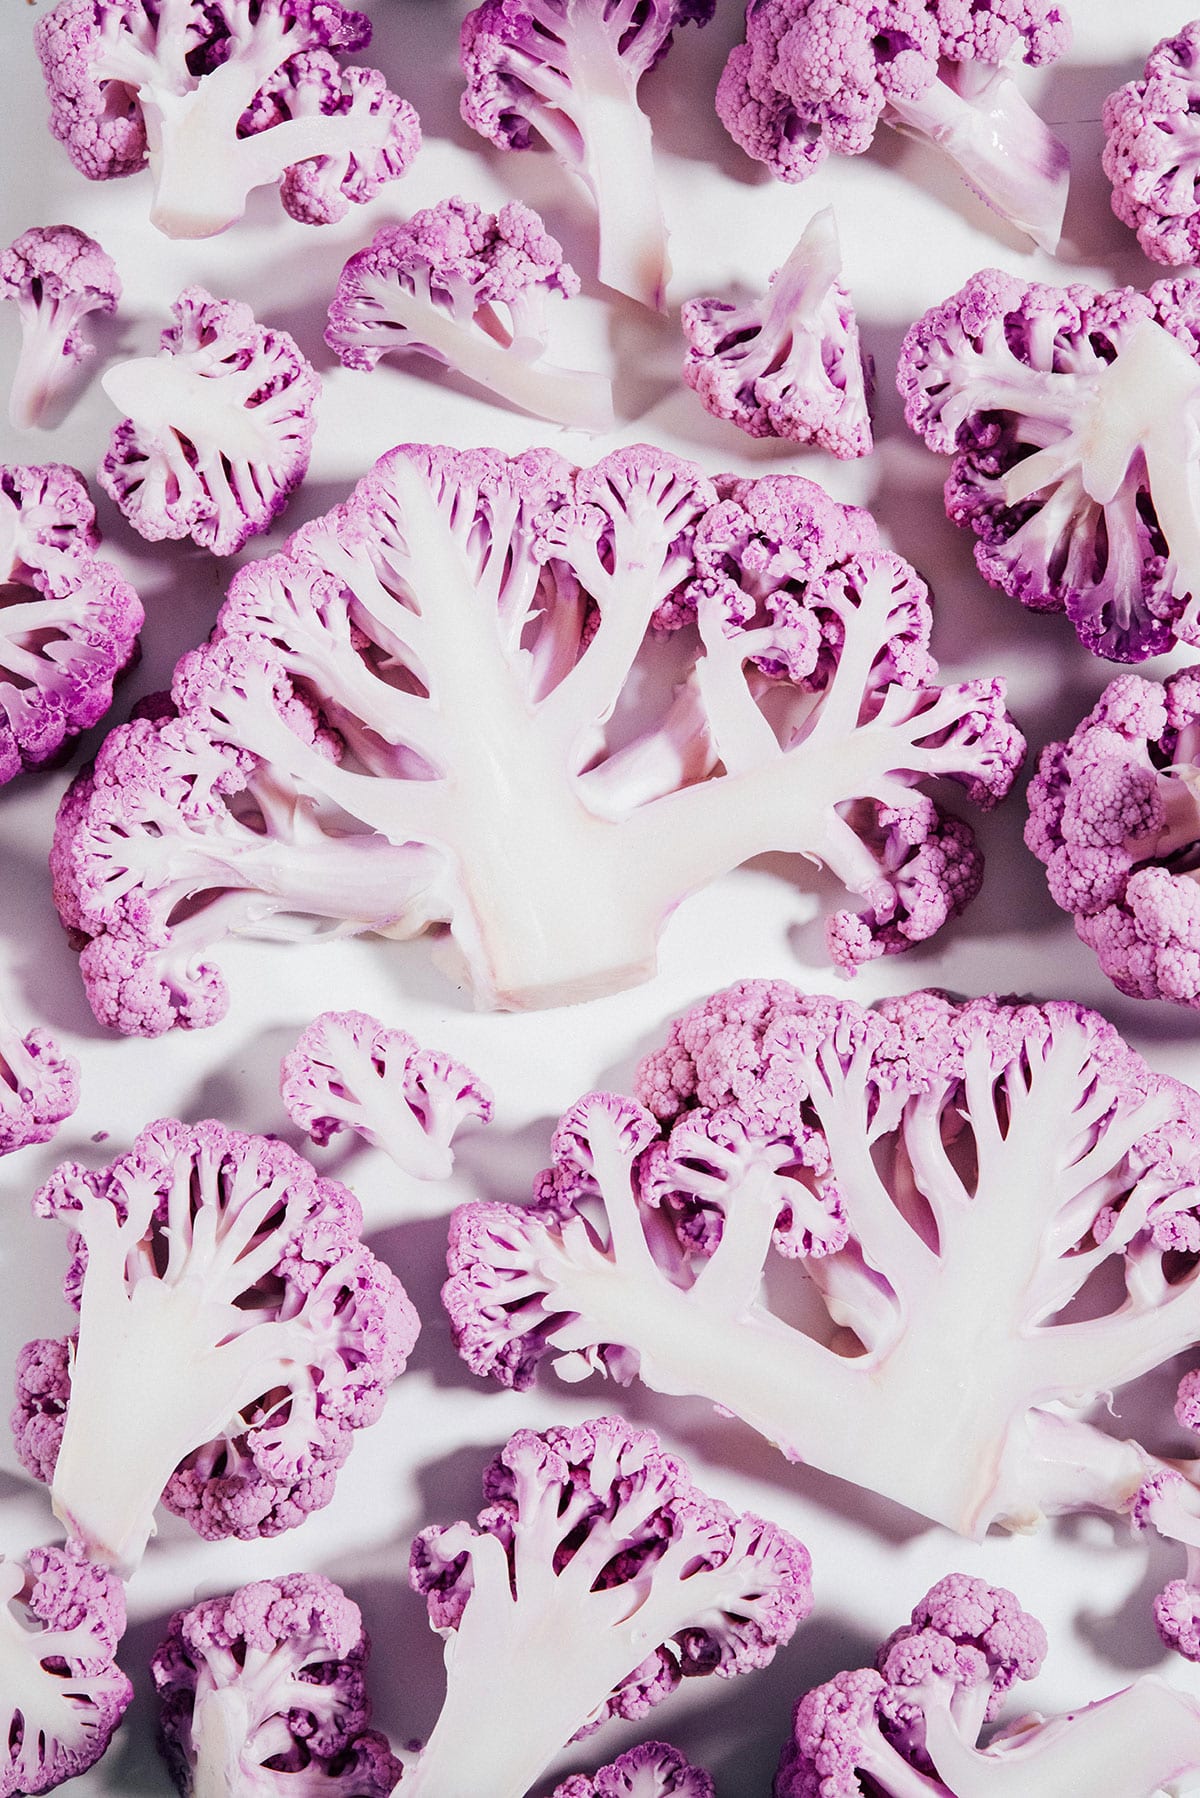 Purple cauliflower slices on a white background.